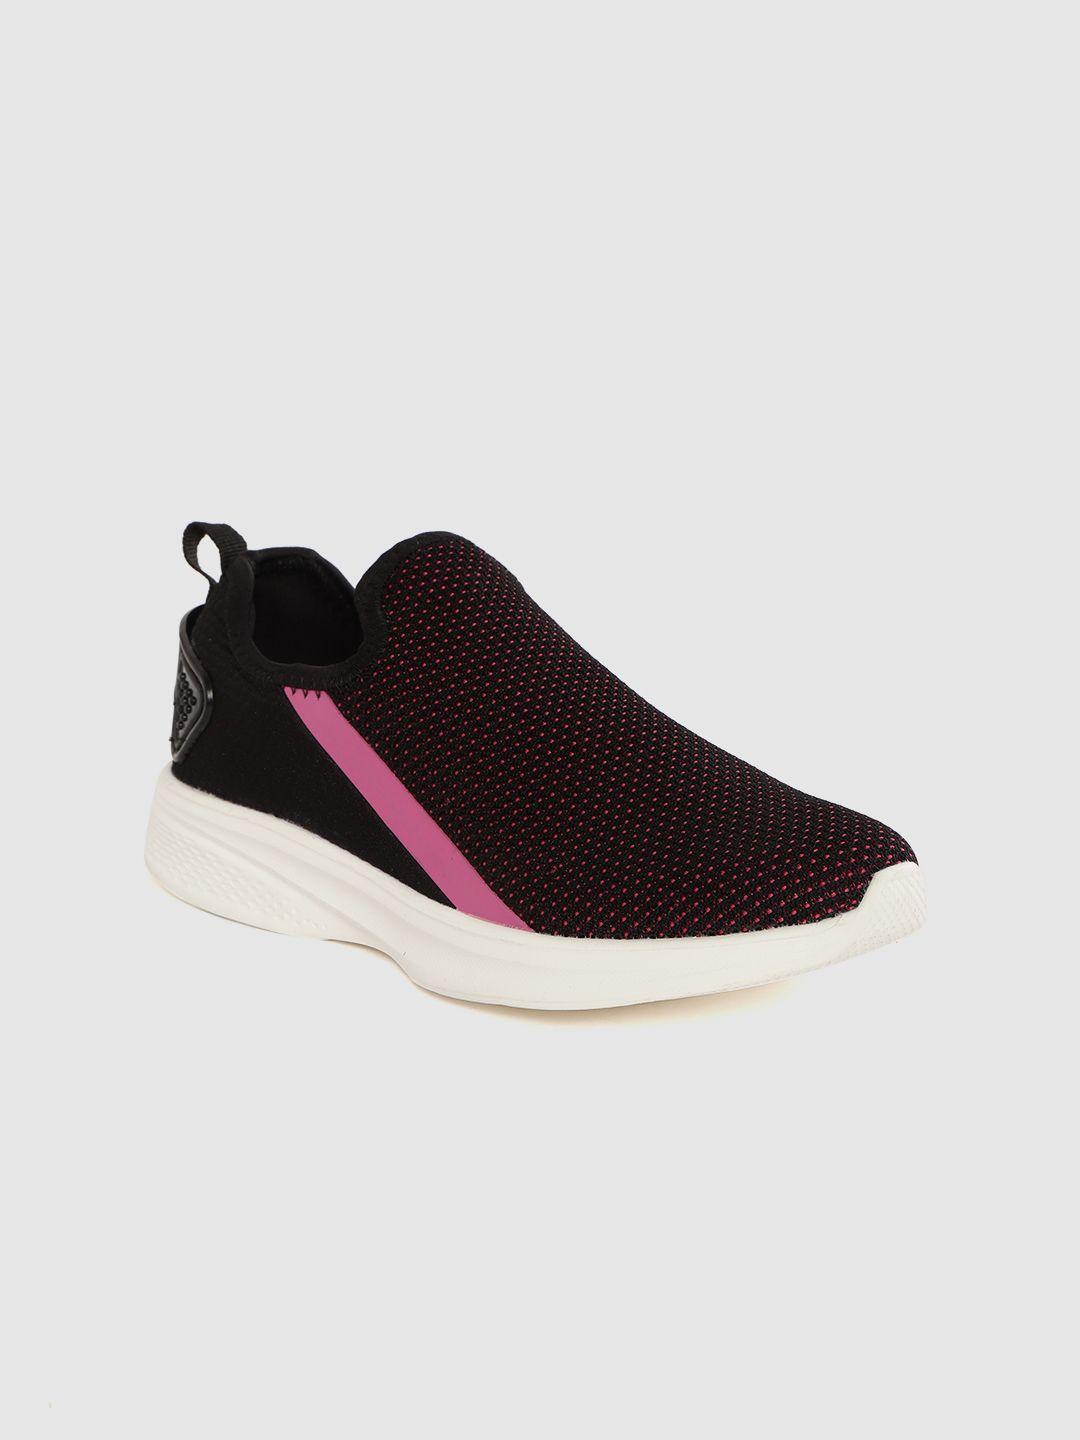 hrx by hrithik roshan women black & pink woven design go-lite slip-on walking shoes